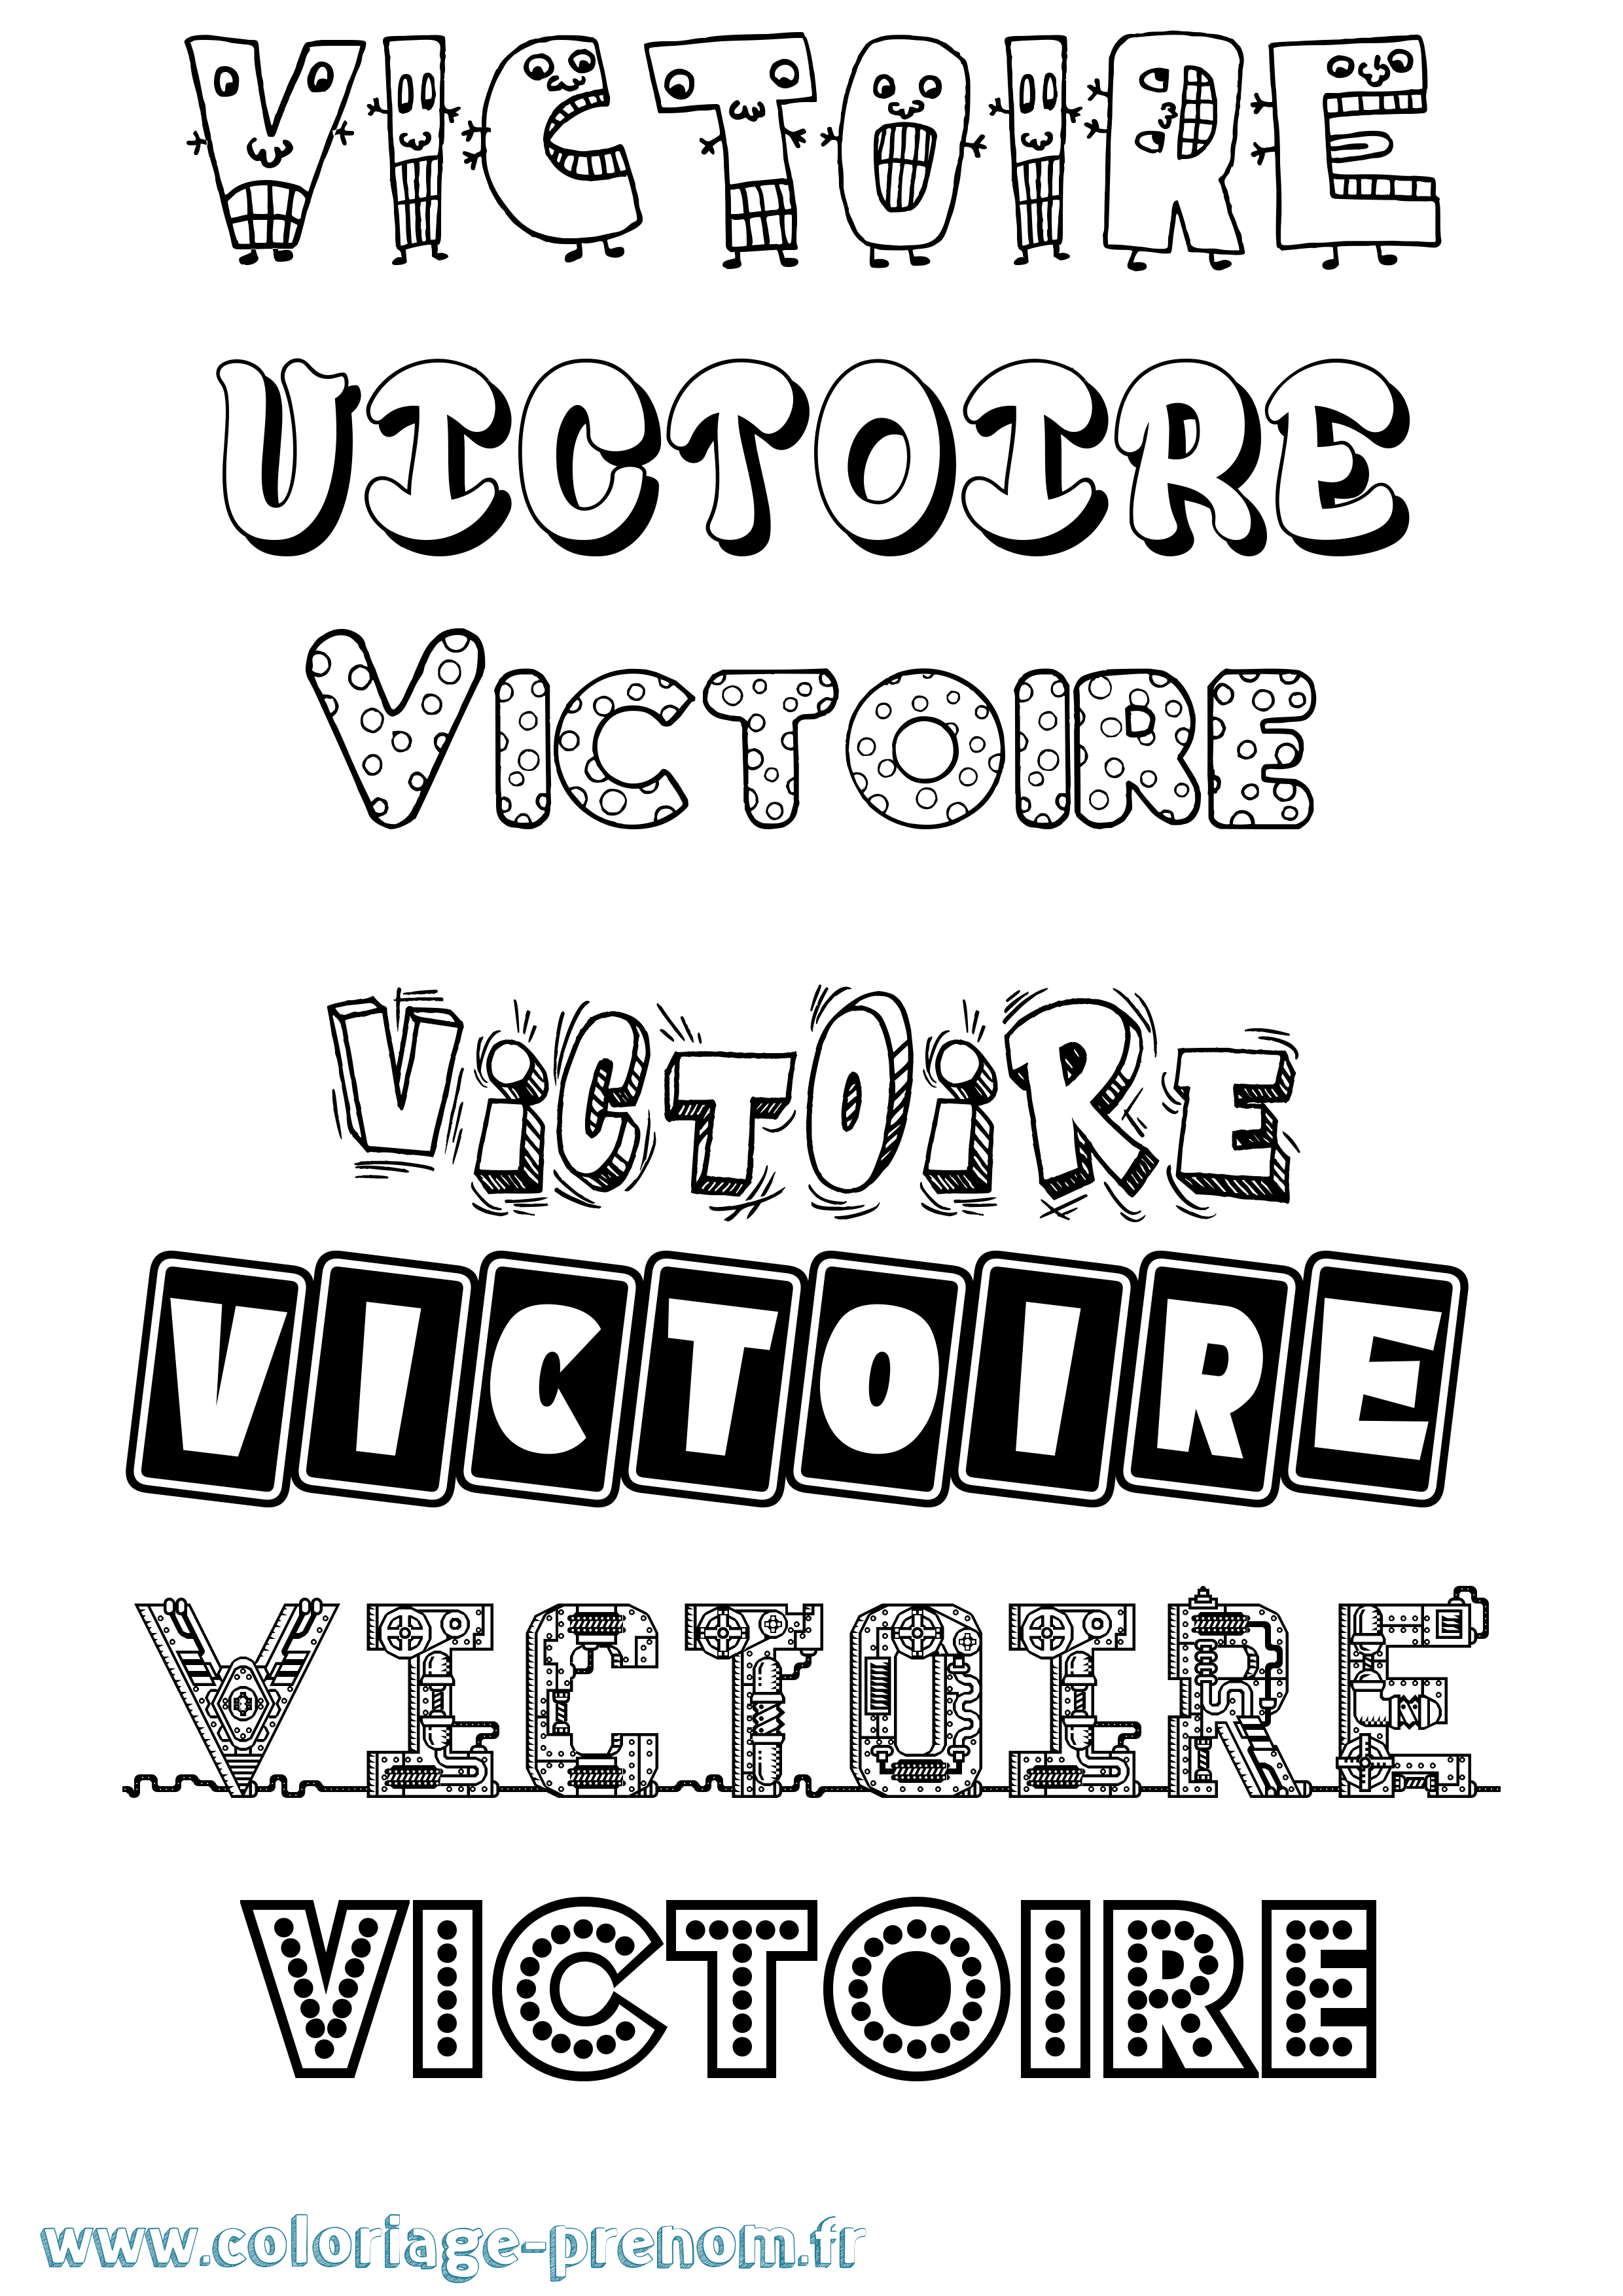 Coloriage prénom Victoire